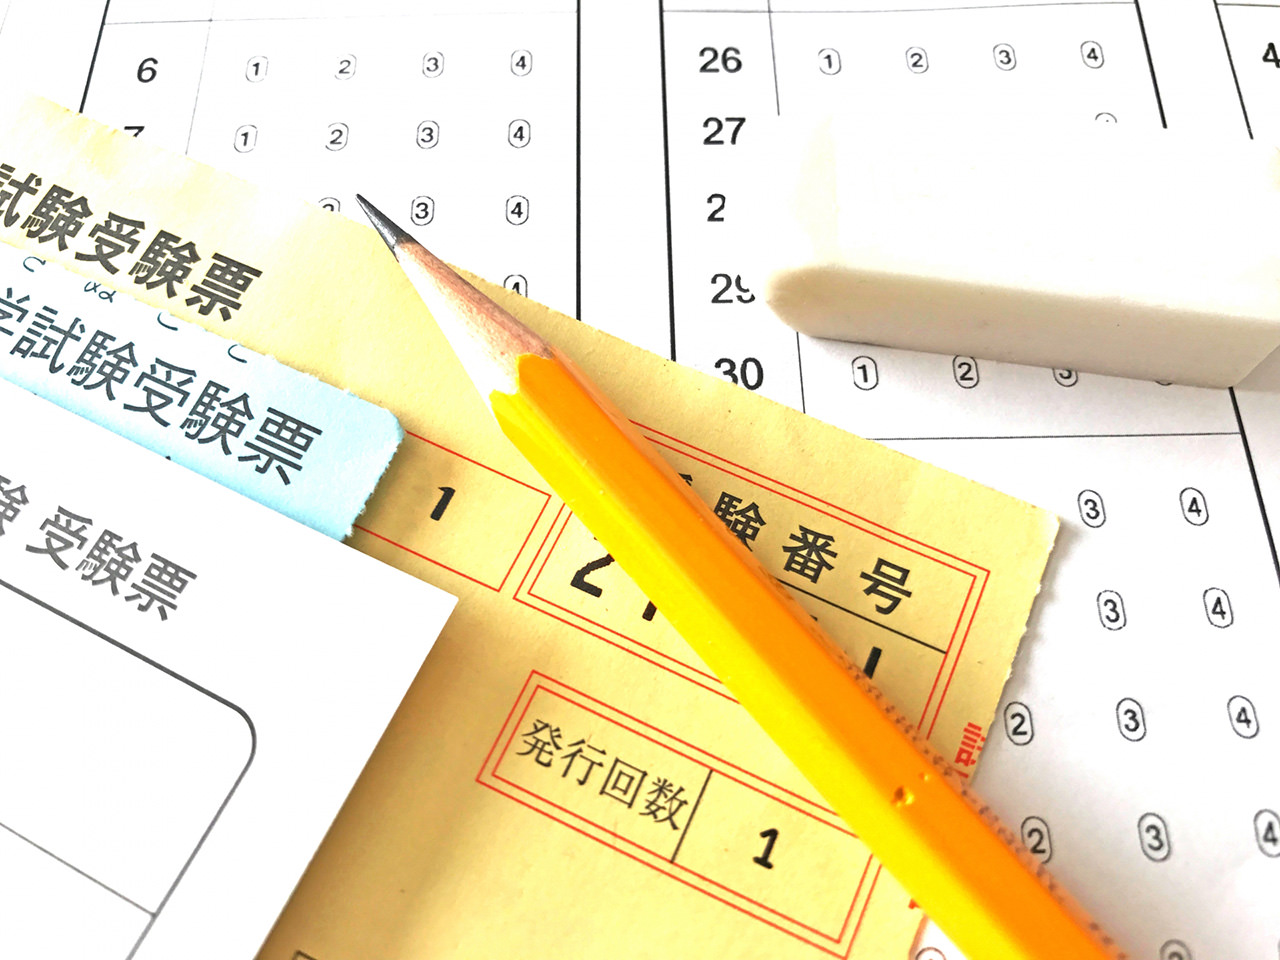 ข้อสอบ SPI คืออะไร ！？ (ข้อมูลวิธีการเตรียมตัวสำหรับการสอบข้อเขียนเพื่อนักศึกษาต่างชาติที่จะหางานในญี่ปุ่น )